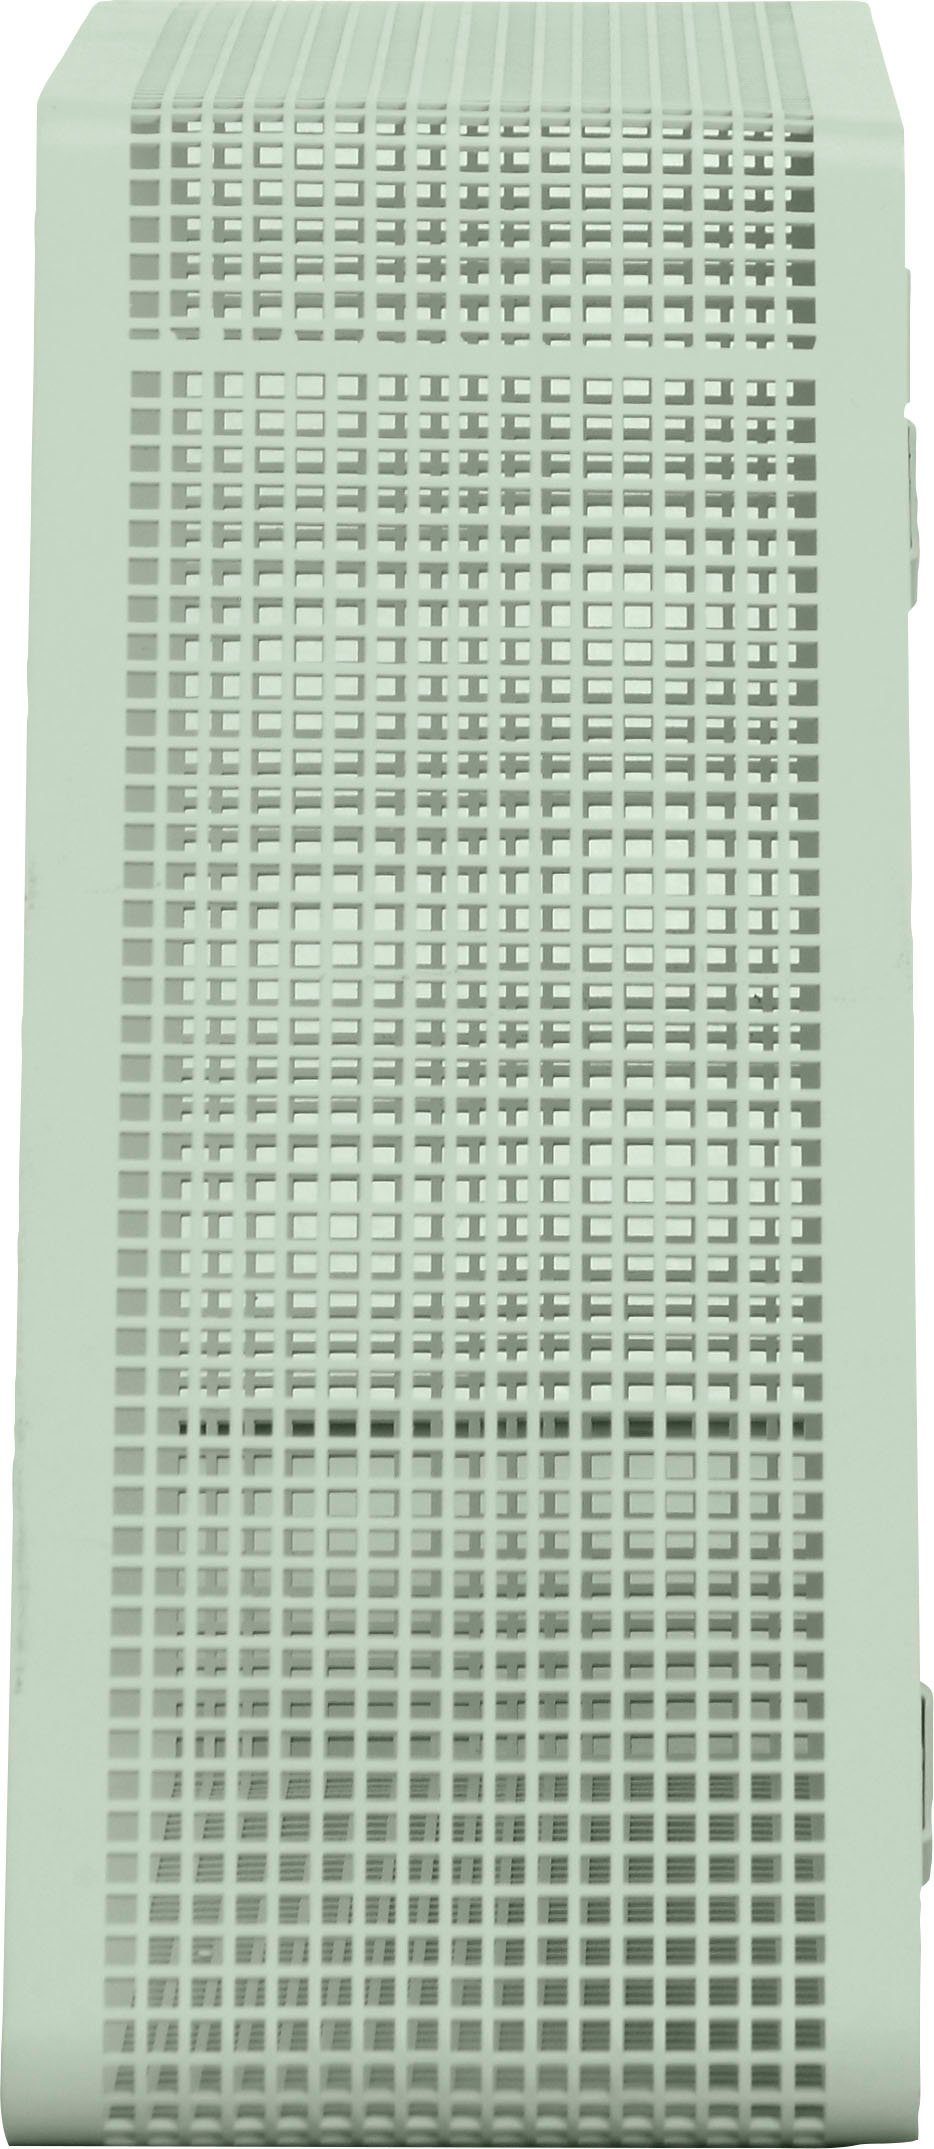 andas Regal Crossby, mit Netzmuster, Breite ca. 56,8 cm, Design by Morten Georgsen grün | Regale